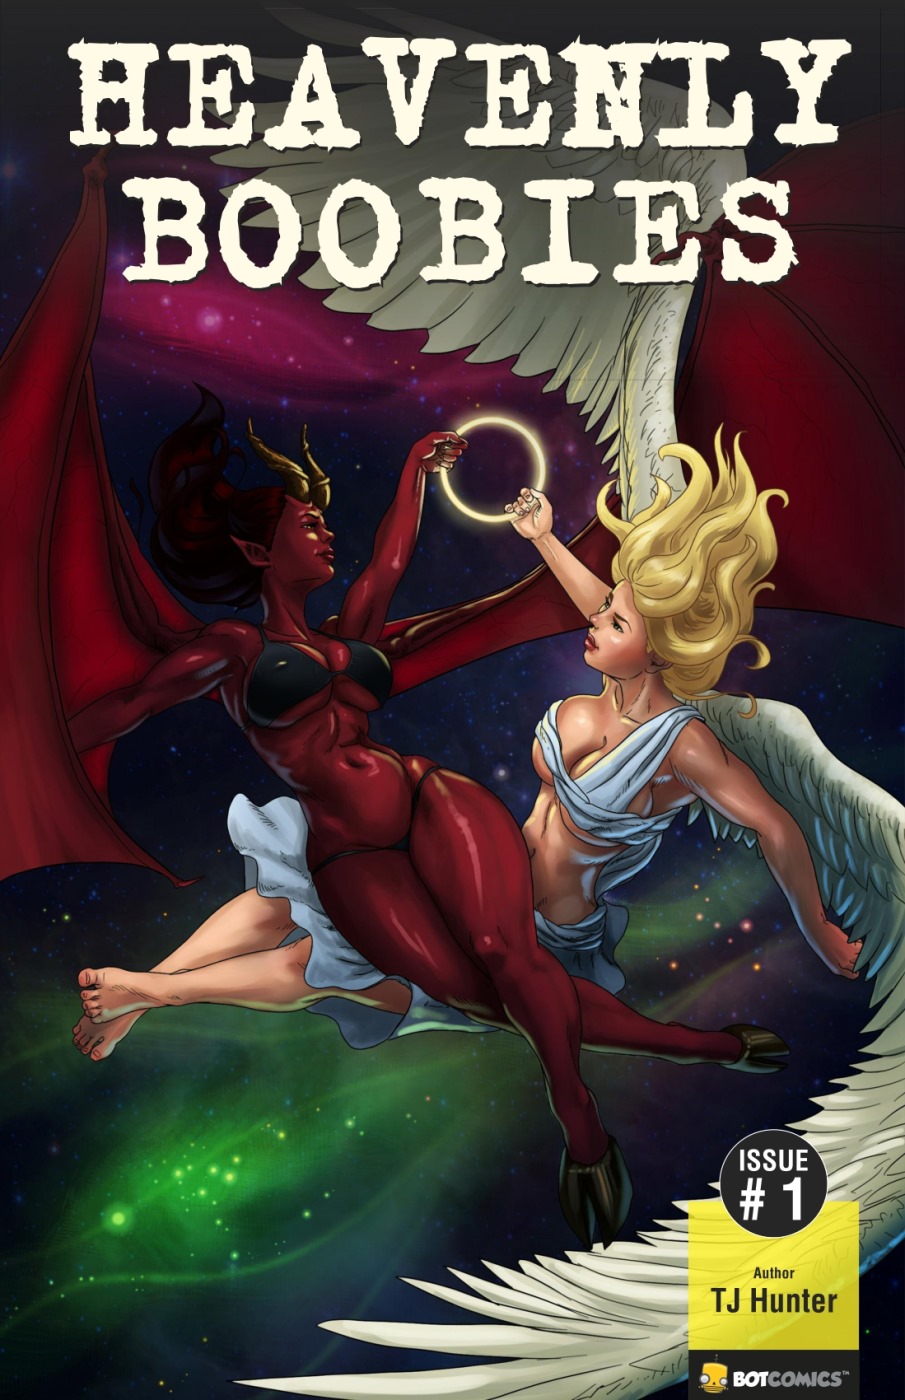 Porn Comics - Heavenly Boobies 1 & 2- Botcomics porn comics 8 muses